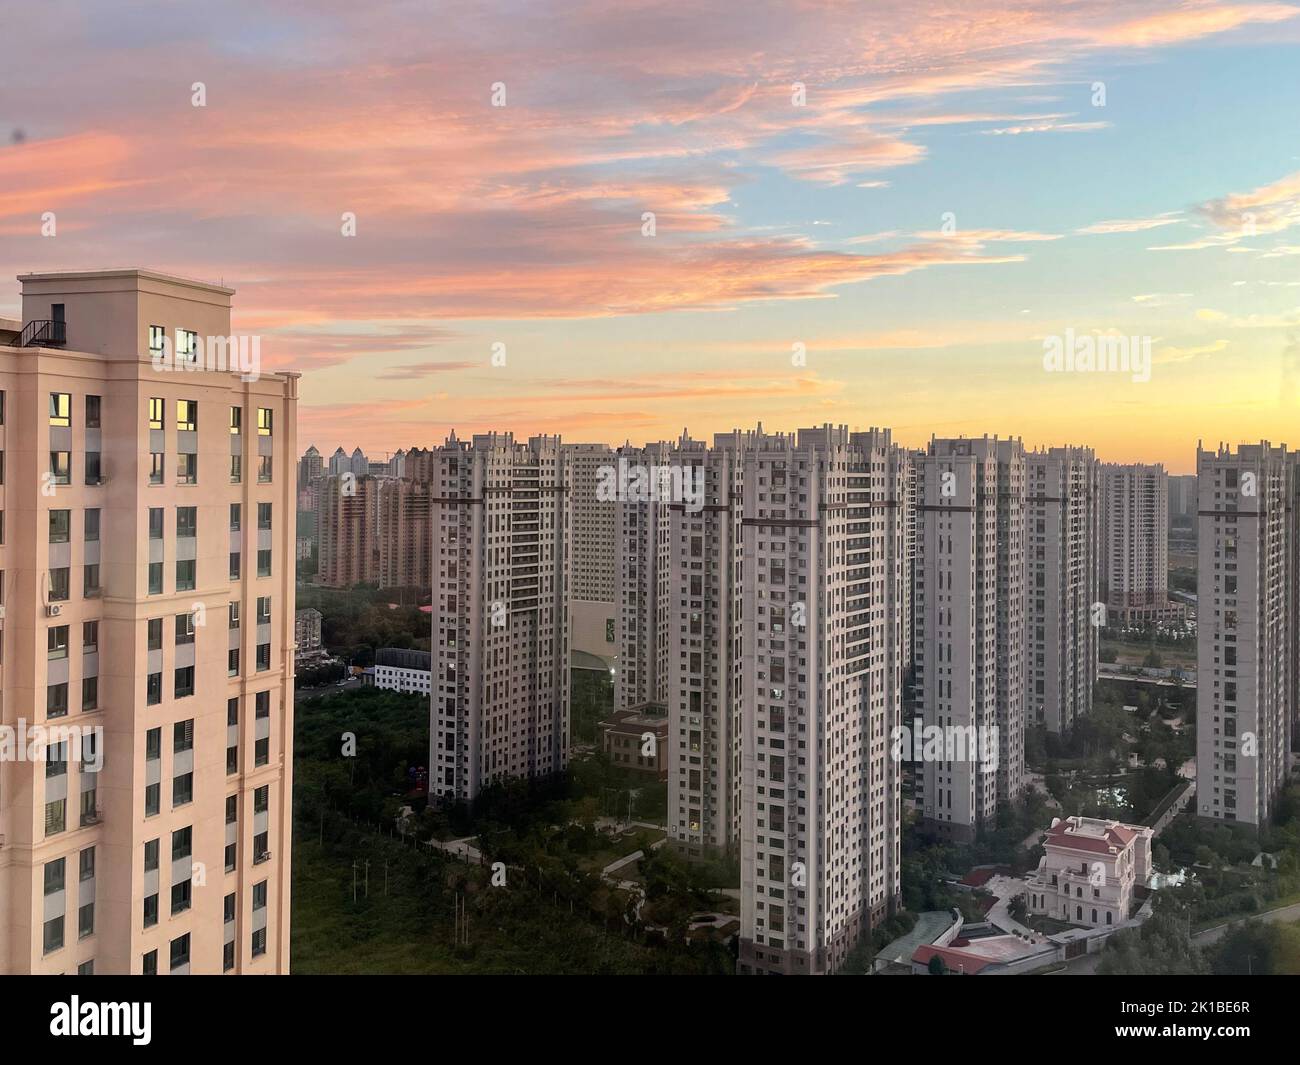 Vue panoramique sur des bâtiments résidentiels similaires au coucher du soleil Banque D'Images